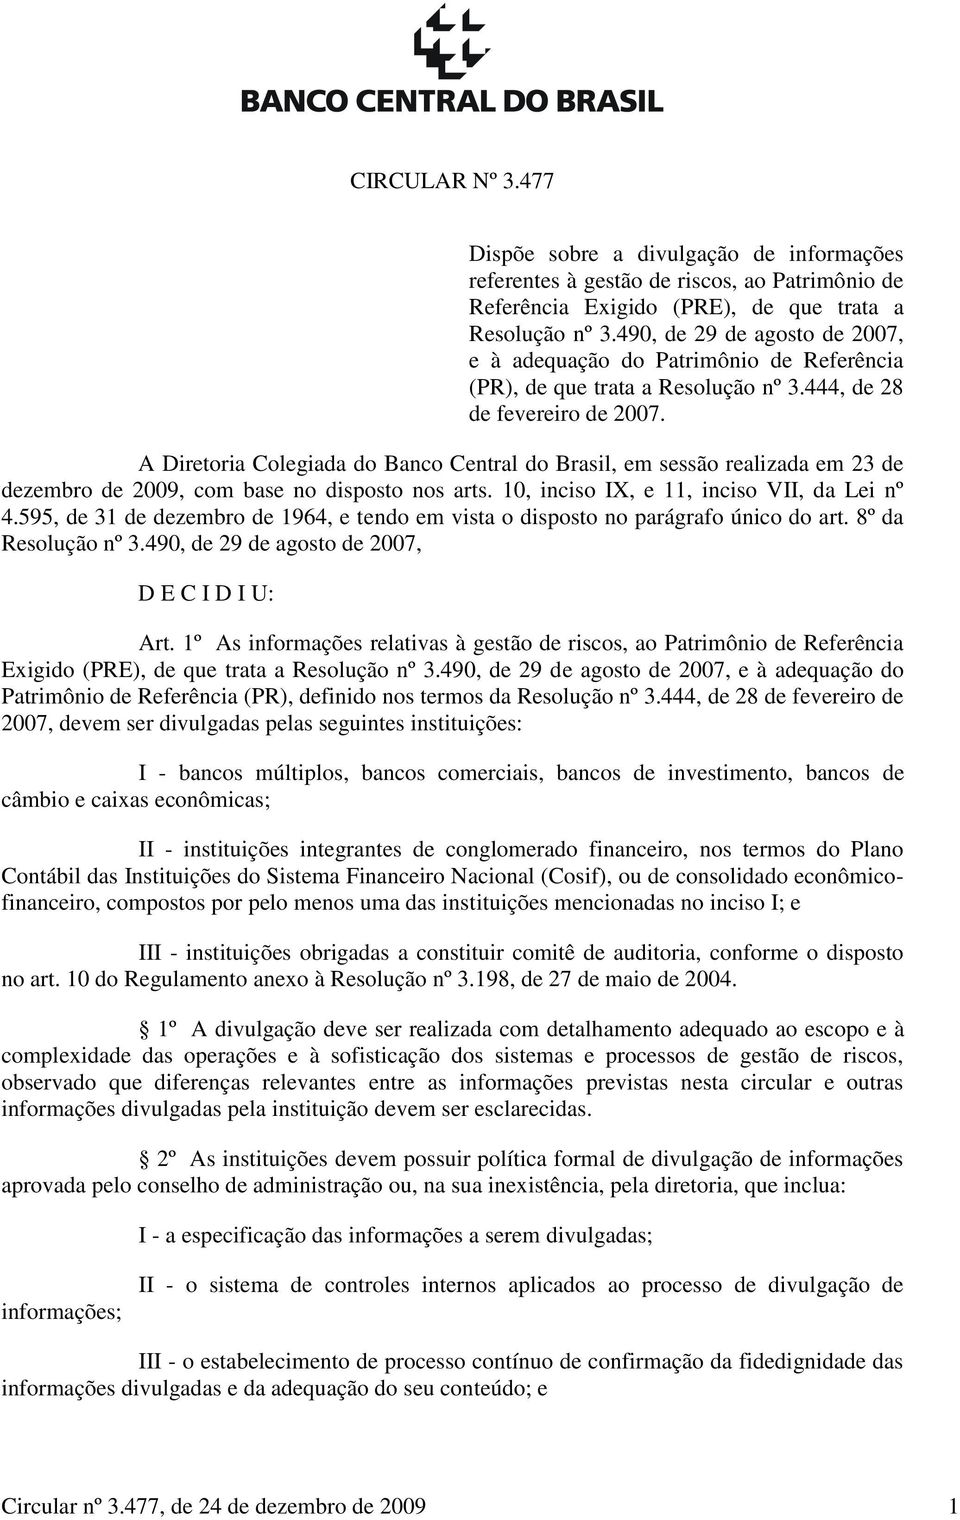 A Diretoria Colegiada do Banco Central do Brasil, em sessão realizada em 23 de dezembro de 2009, com base no disposto nos arts. 10, inciso IX, e 11, inciso VII, da Lei nº 4.